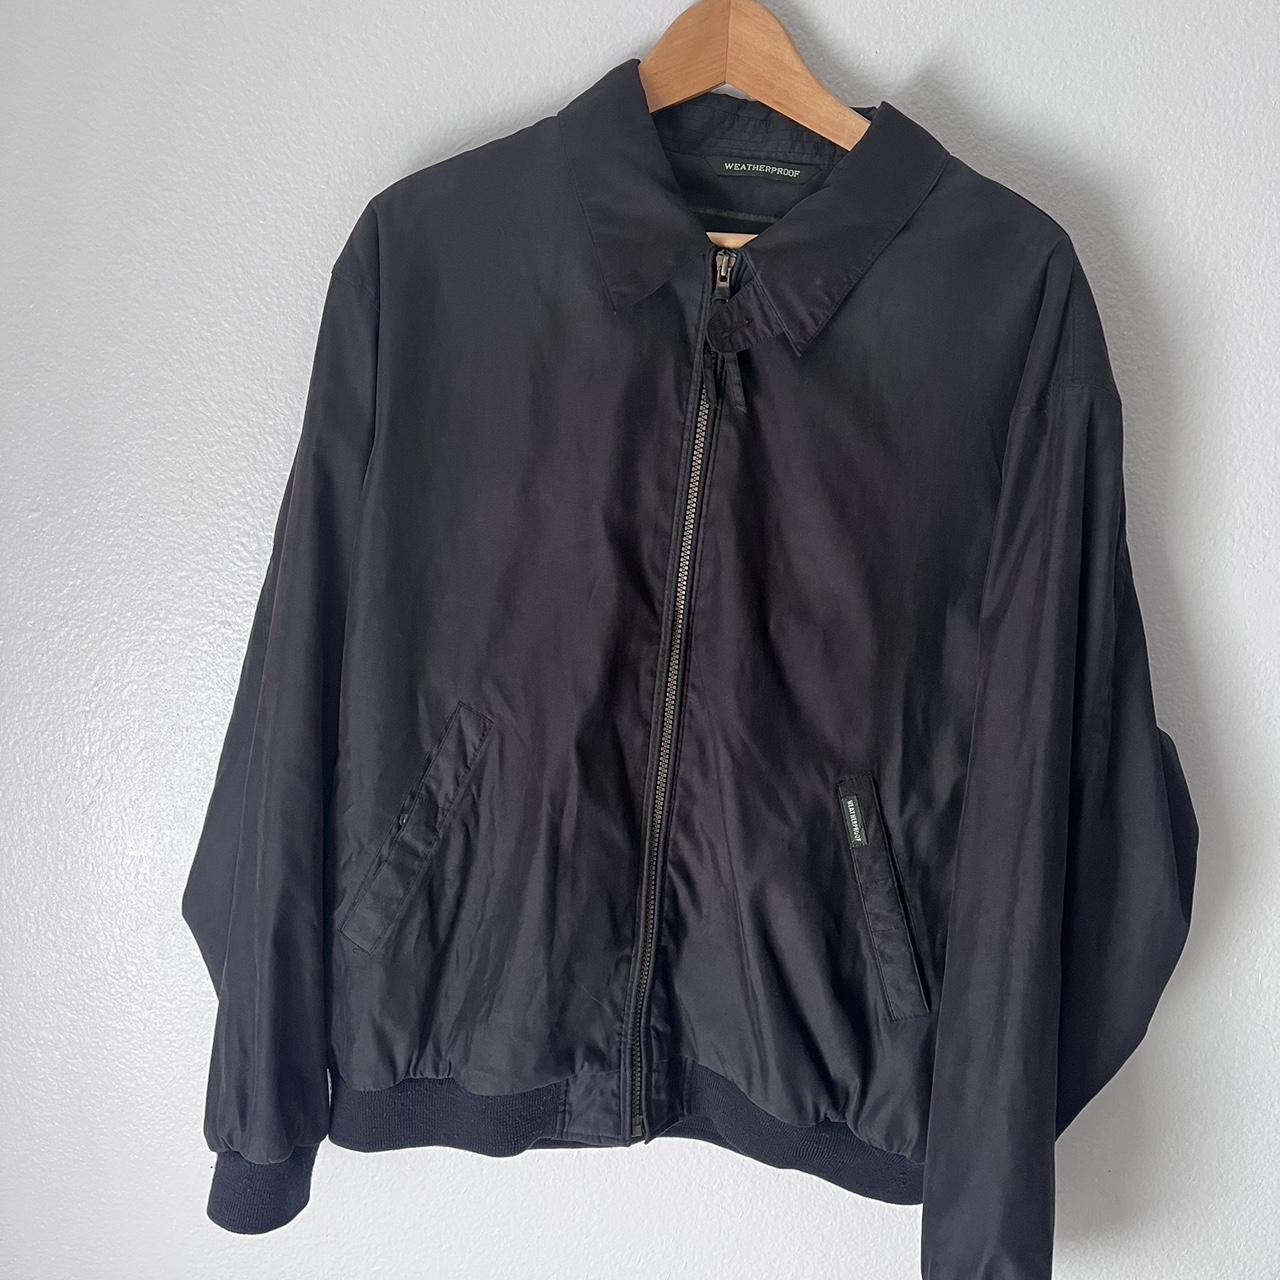 Vintage Weatherproof Bomber Jacket: - zipper pocket... - Depop